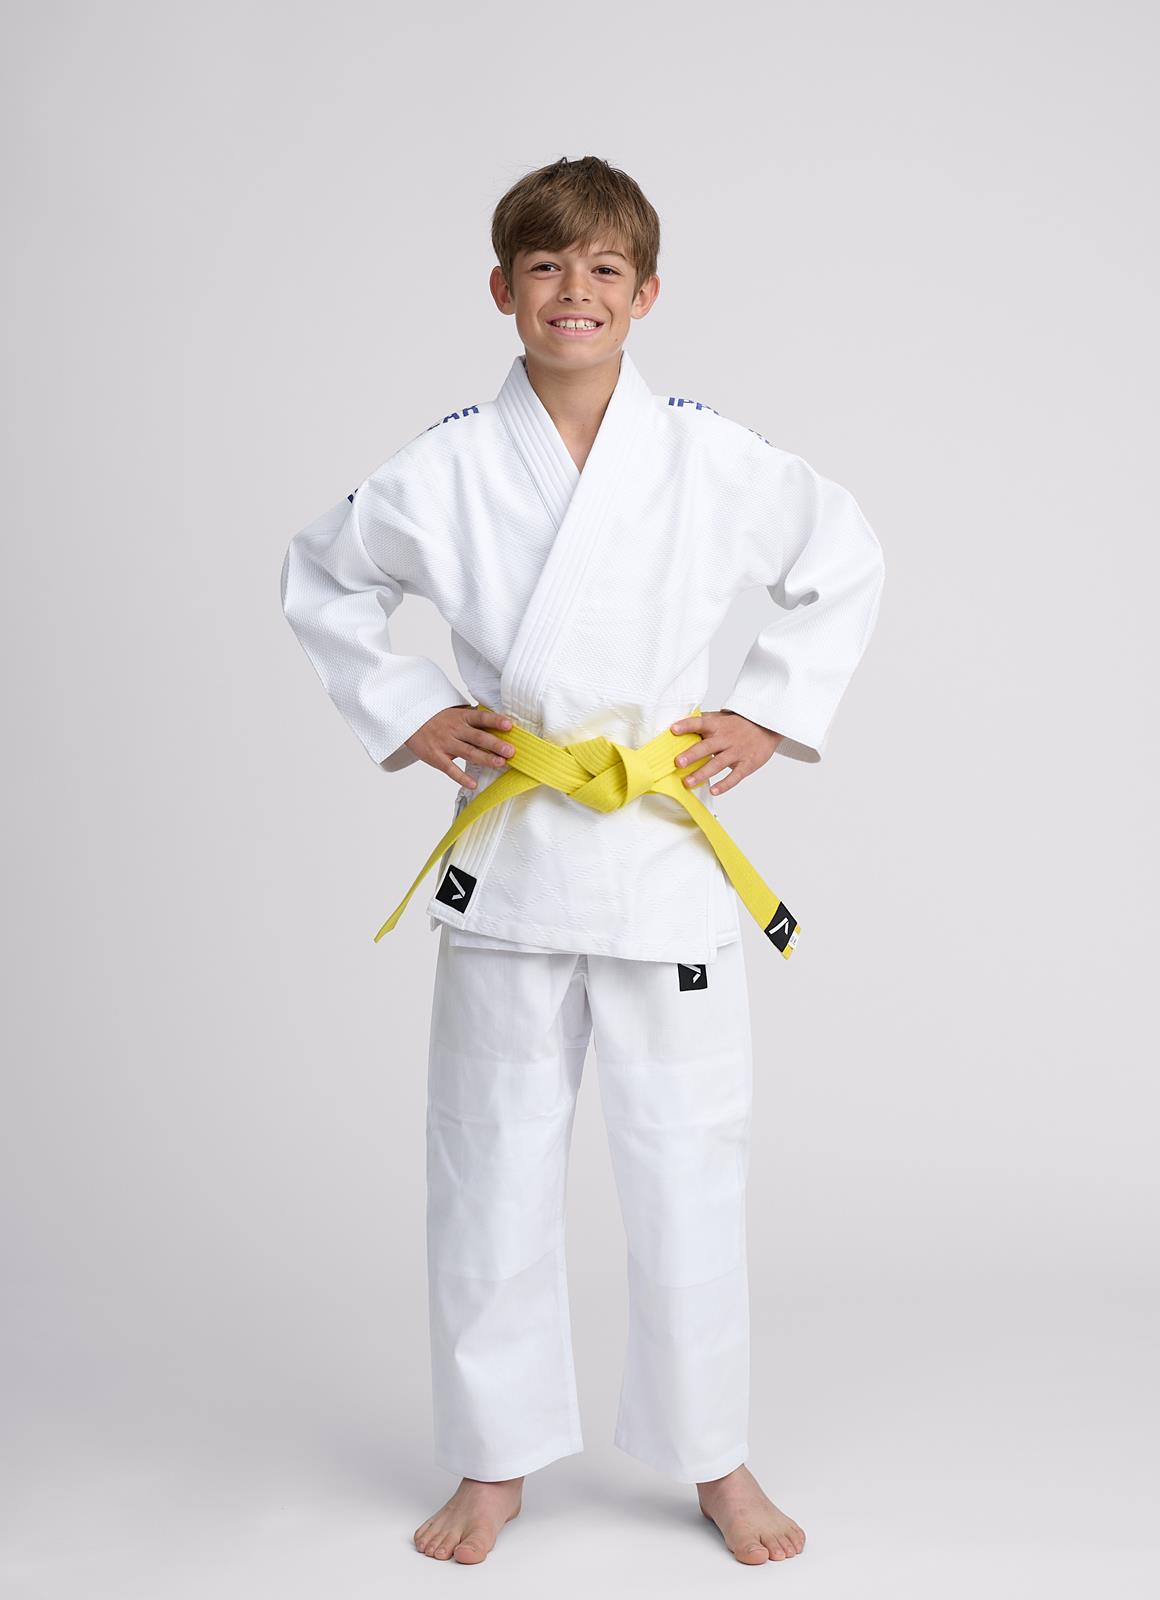 IPPONGEAR Kids Judo Gi NXT, Kids & Beginners